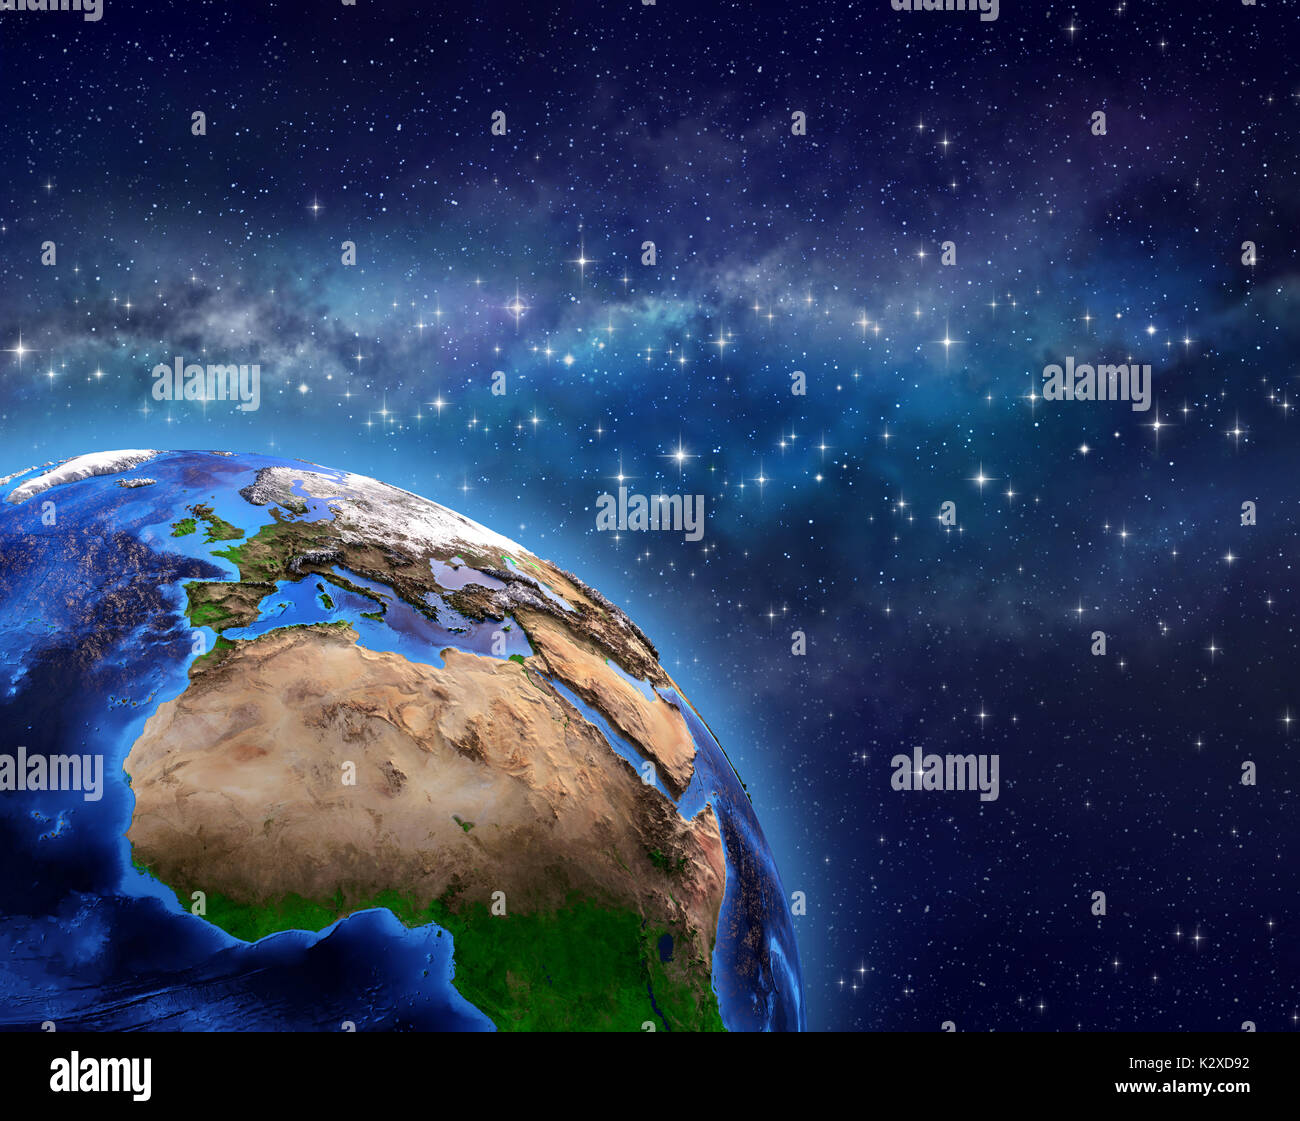 Planet Erde im Weltraum, star Cluster und Milchstraße weit hinter - 3D-Illustration - Elemente dieses Bild von der NASA eingerichtet Stockfoto